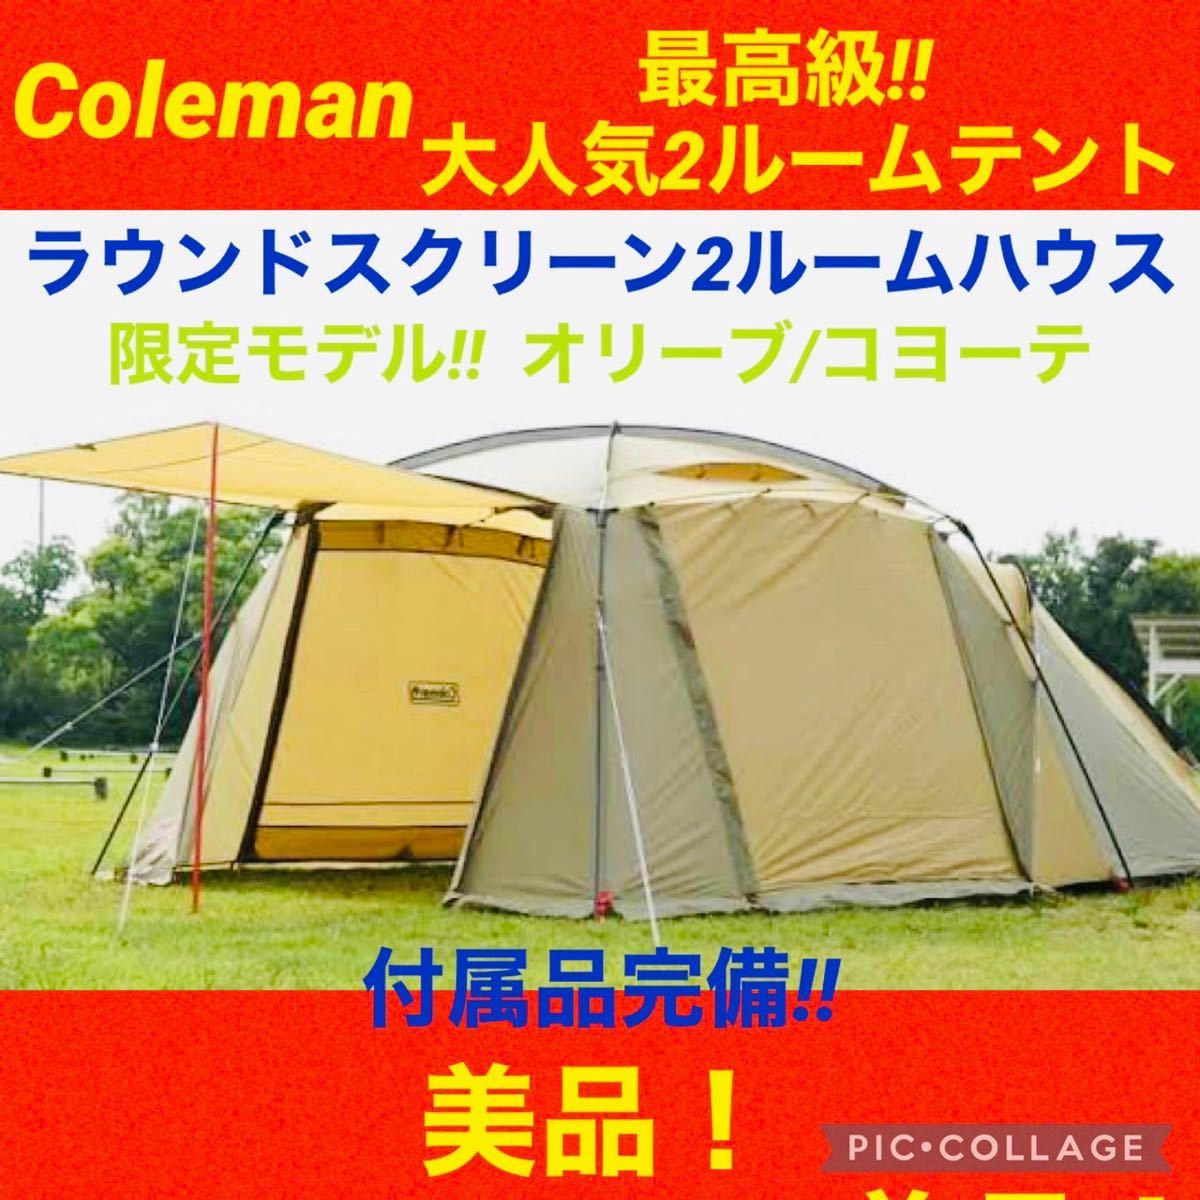 新しい コールマン☆テントラウンドスクリーン2ルームハウスオリーブ 